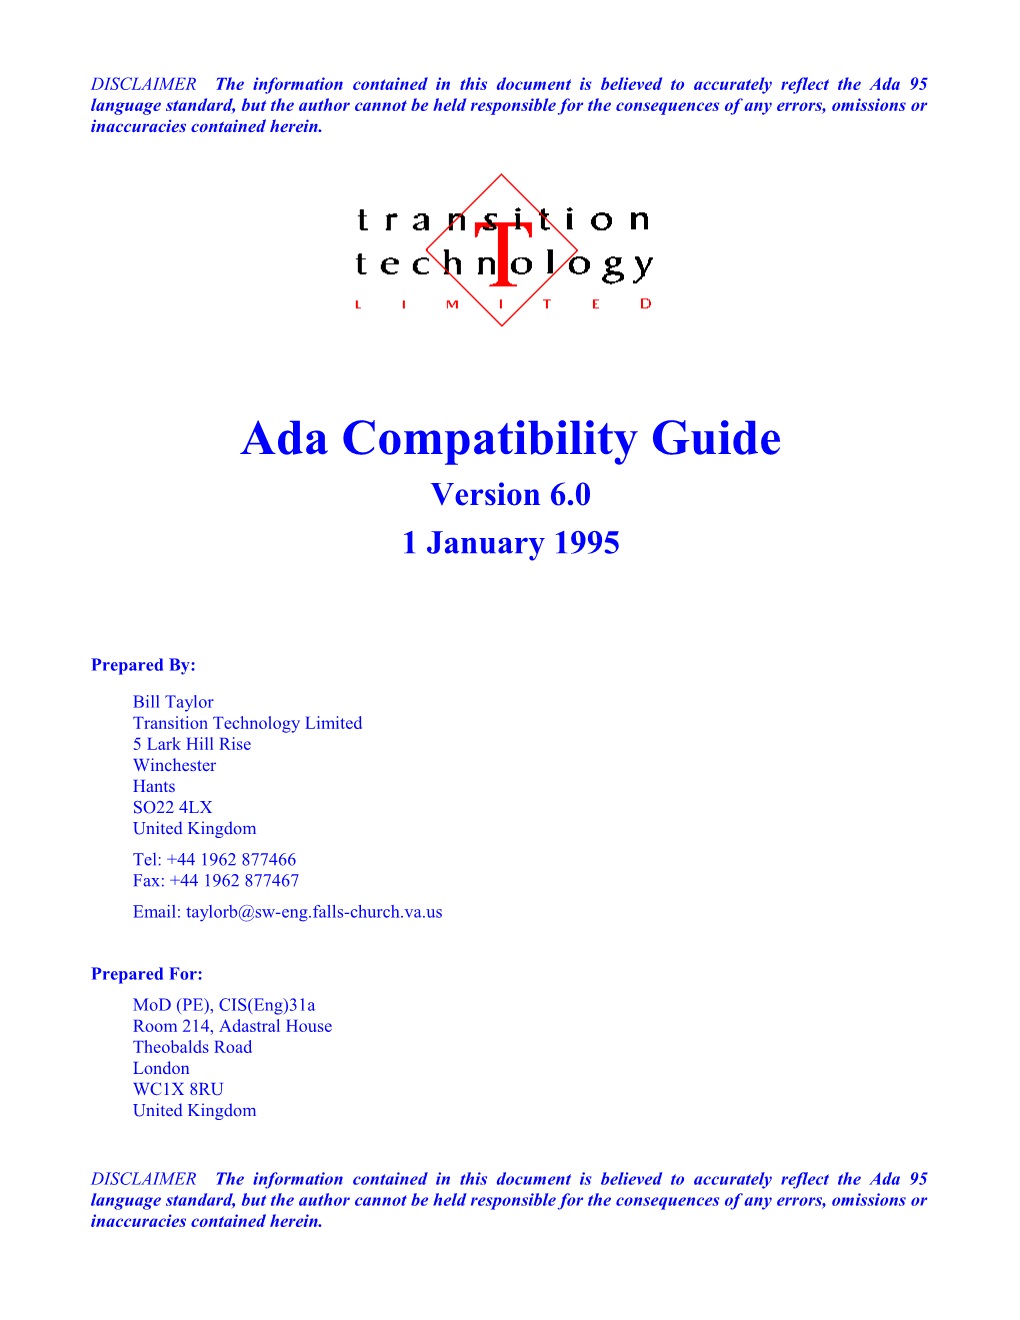 Ada 9X Compatibility Guide, Version 6.0 (Letter)